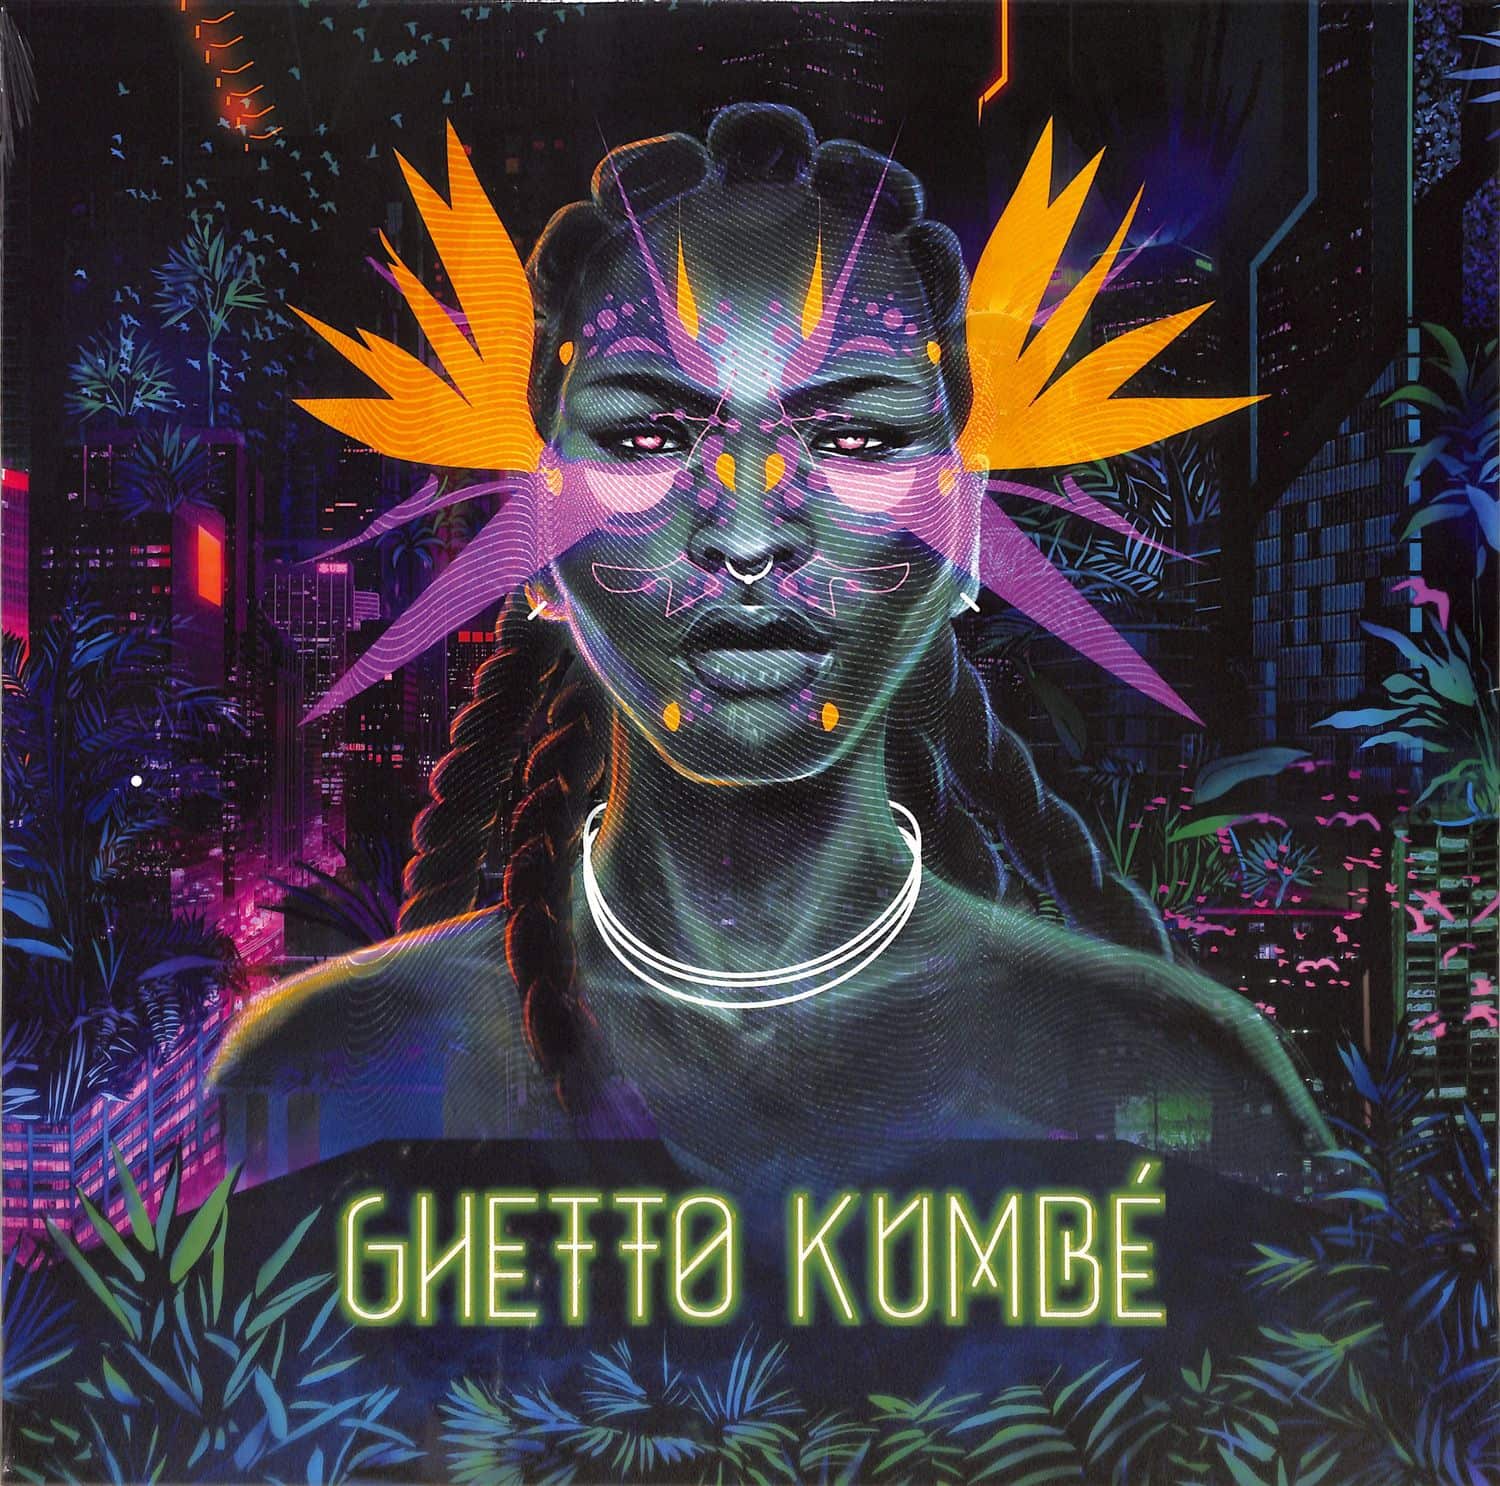 Ghetto Kumbe - GHETTO KUMBE 